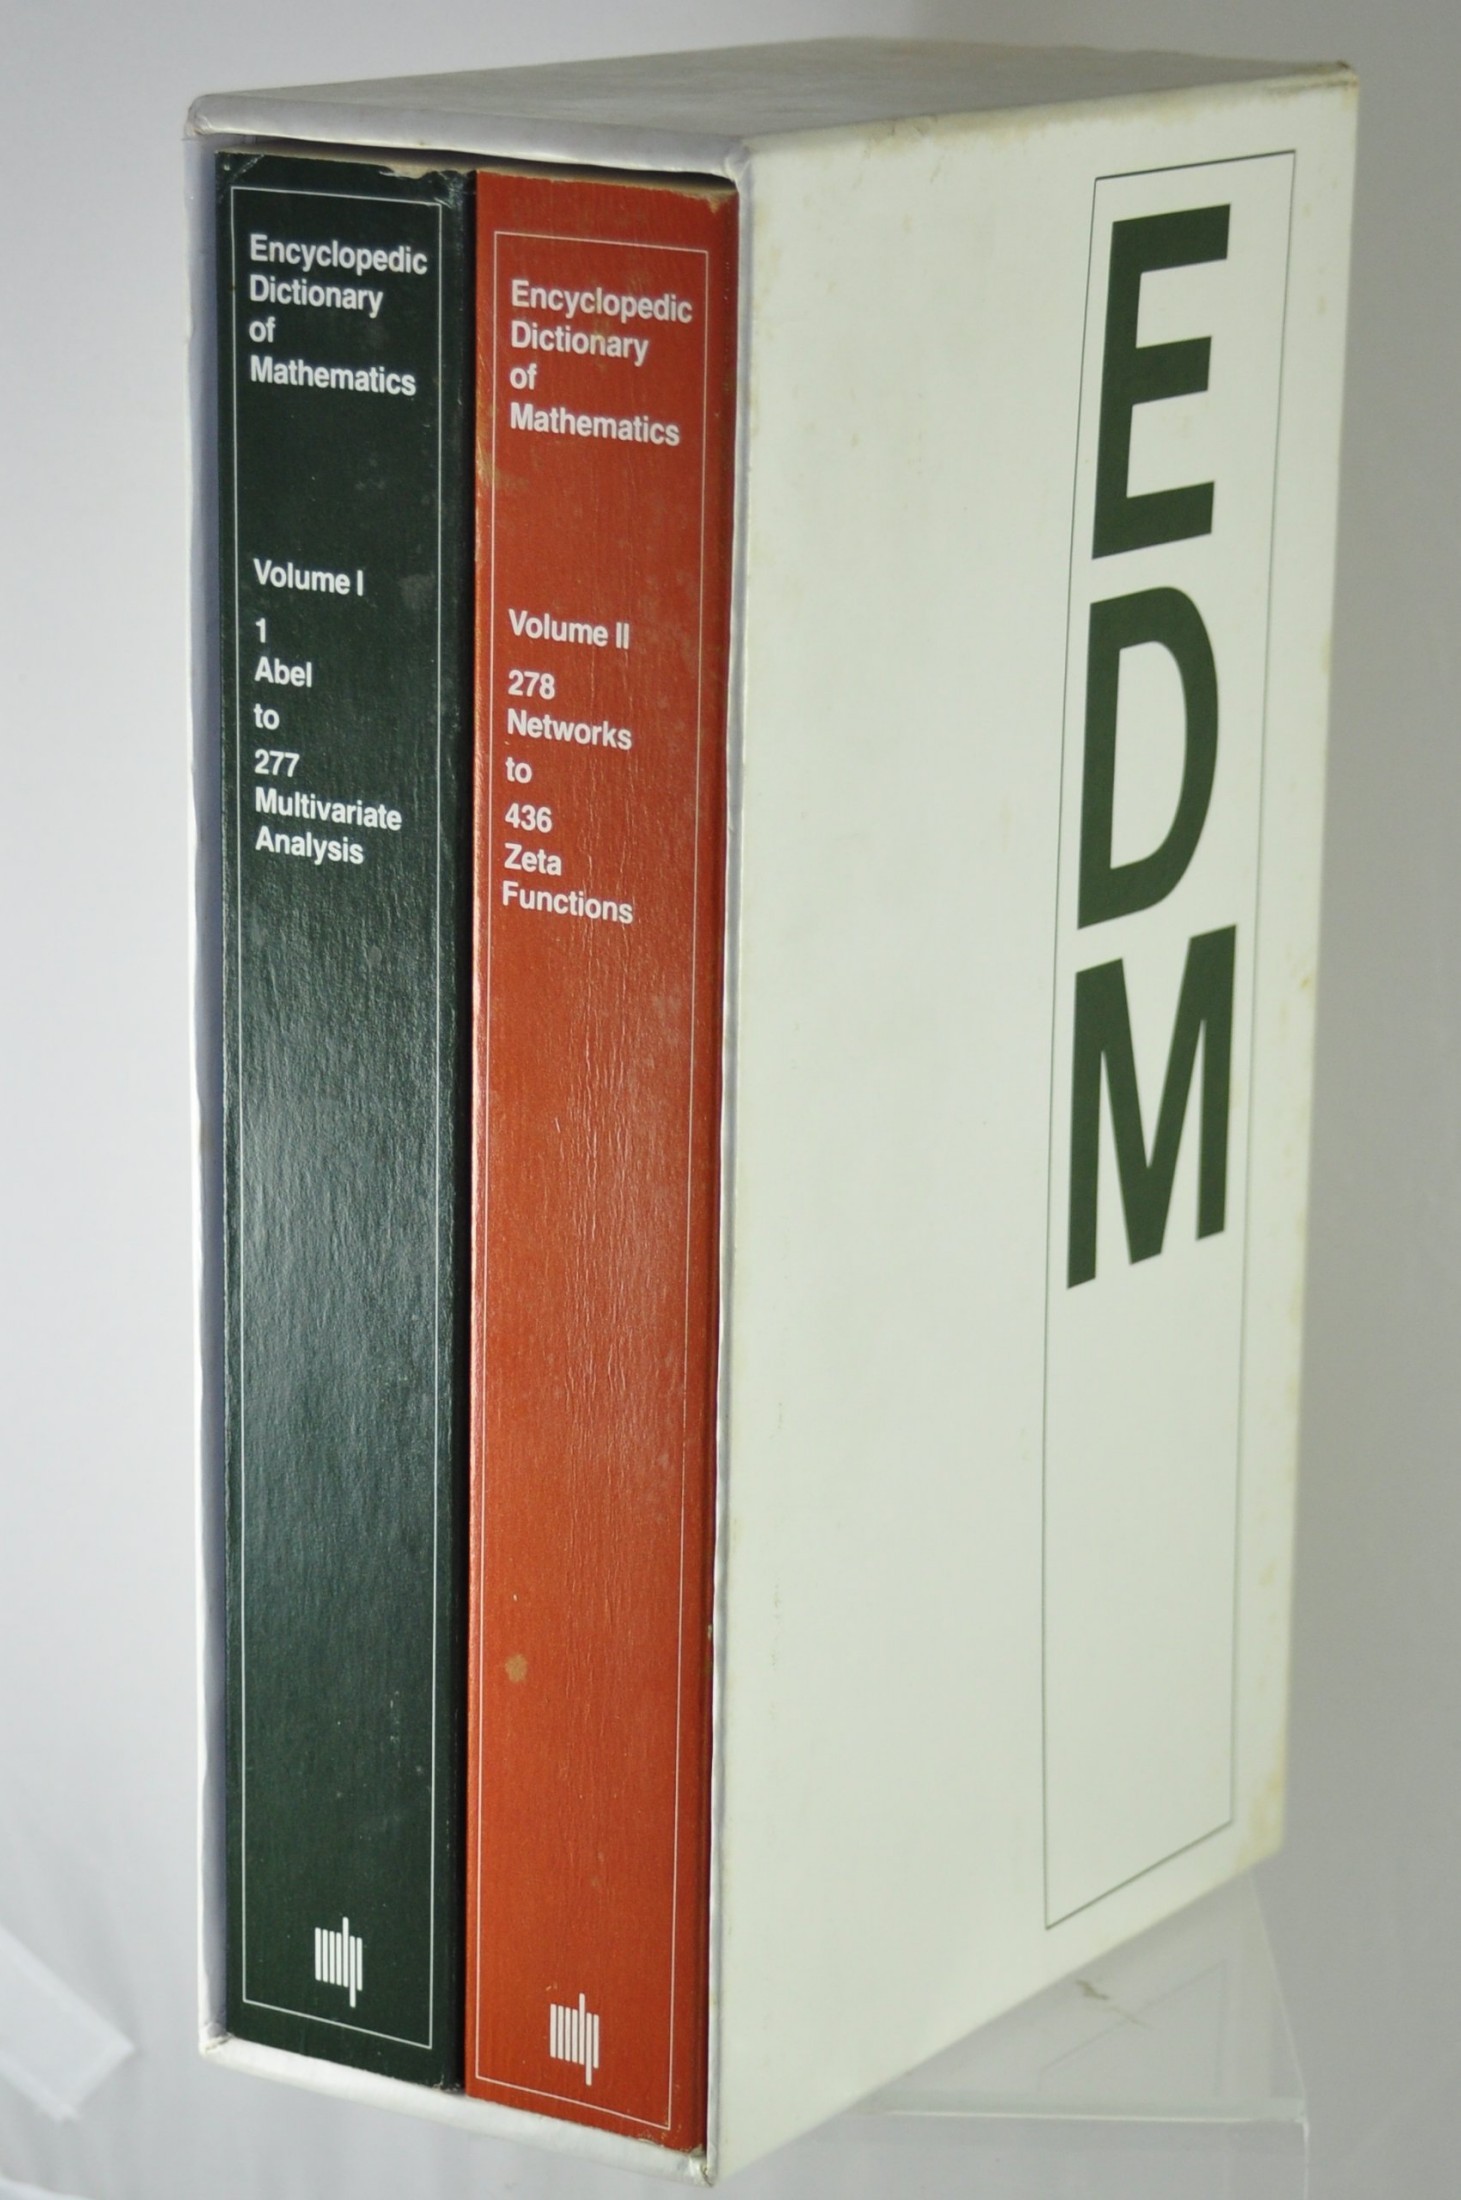 Encyclopedic Dictionary of Mathematics